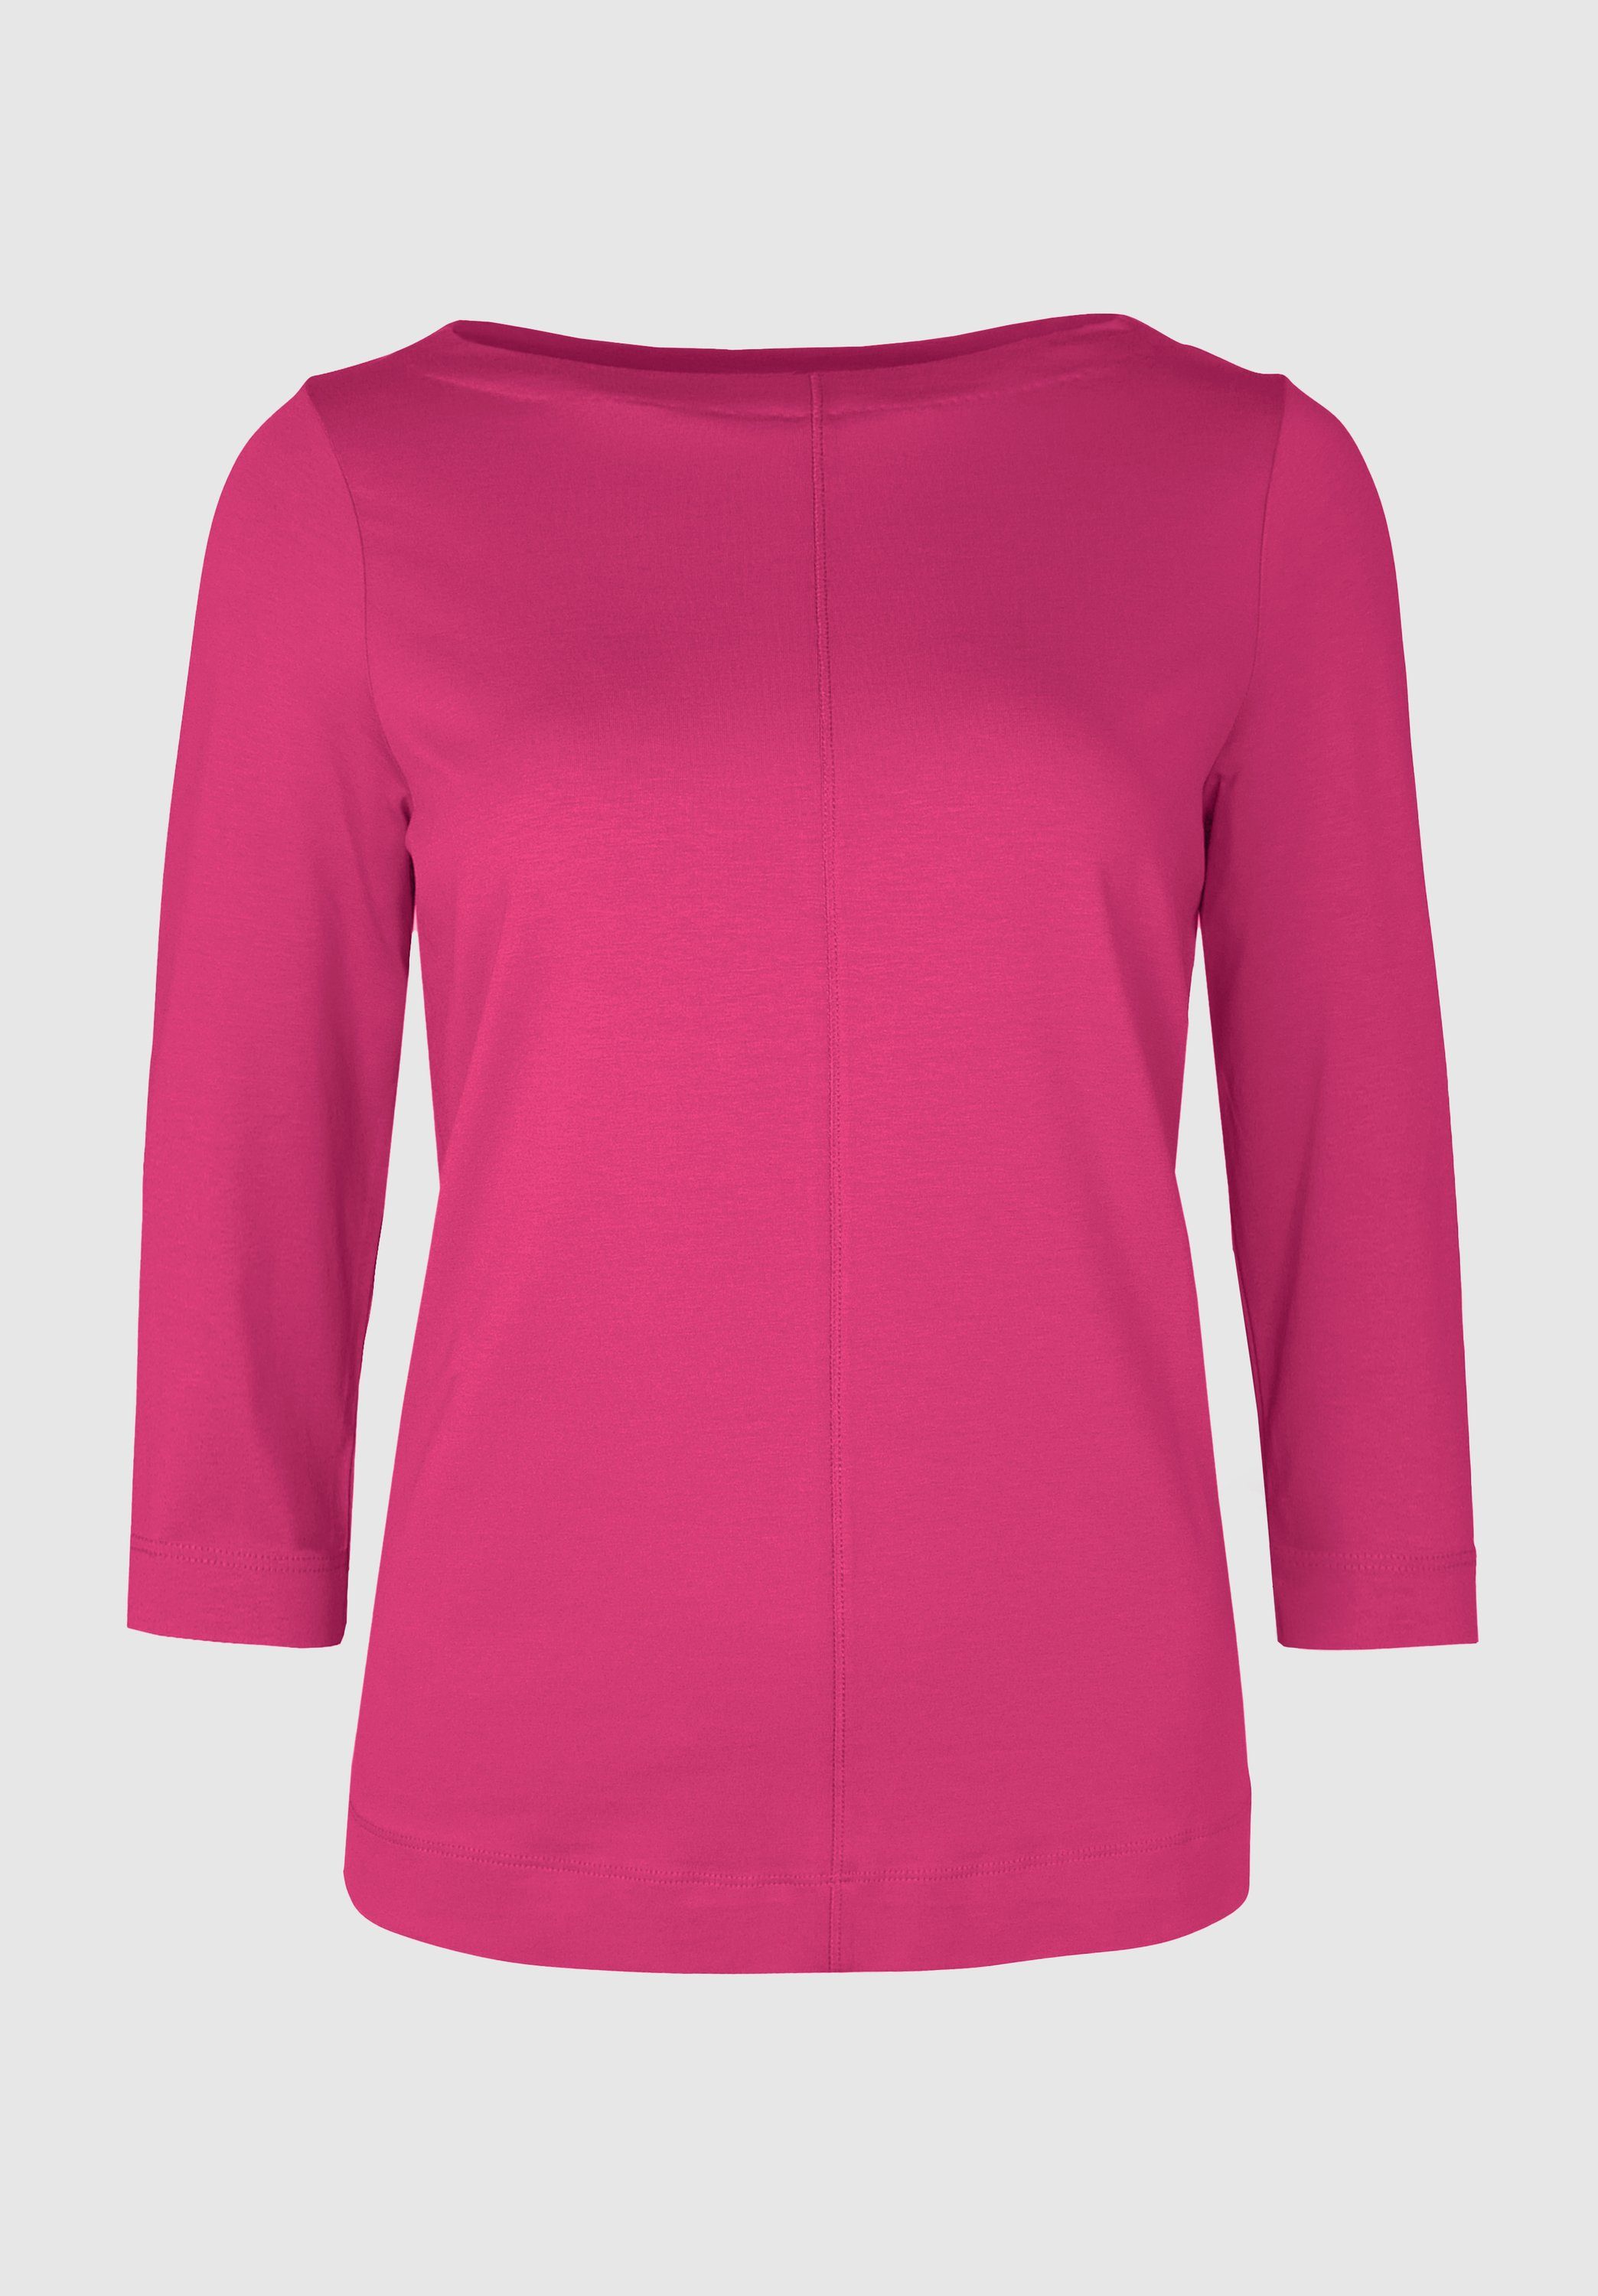 Look modernem cool bianca 3/4-Arm-Shirt in pink angesagten Trendfarben DIELLA und